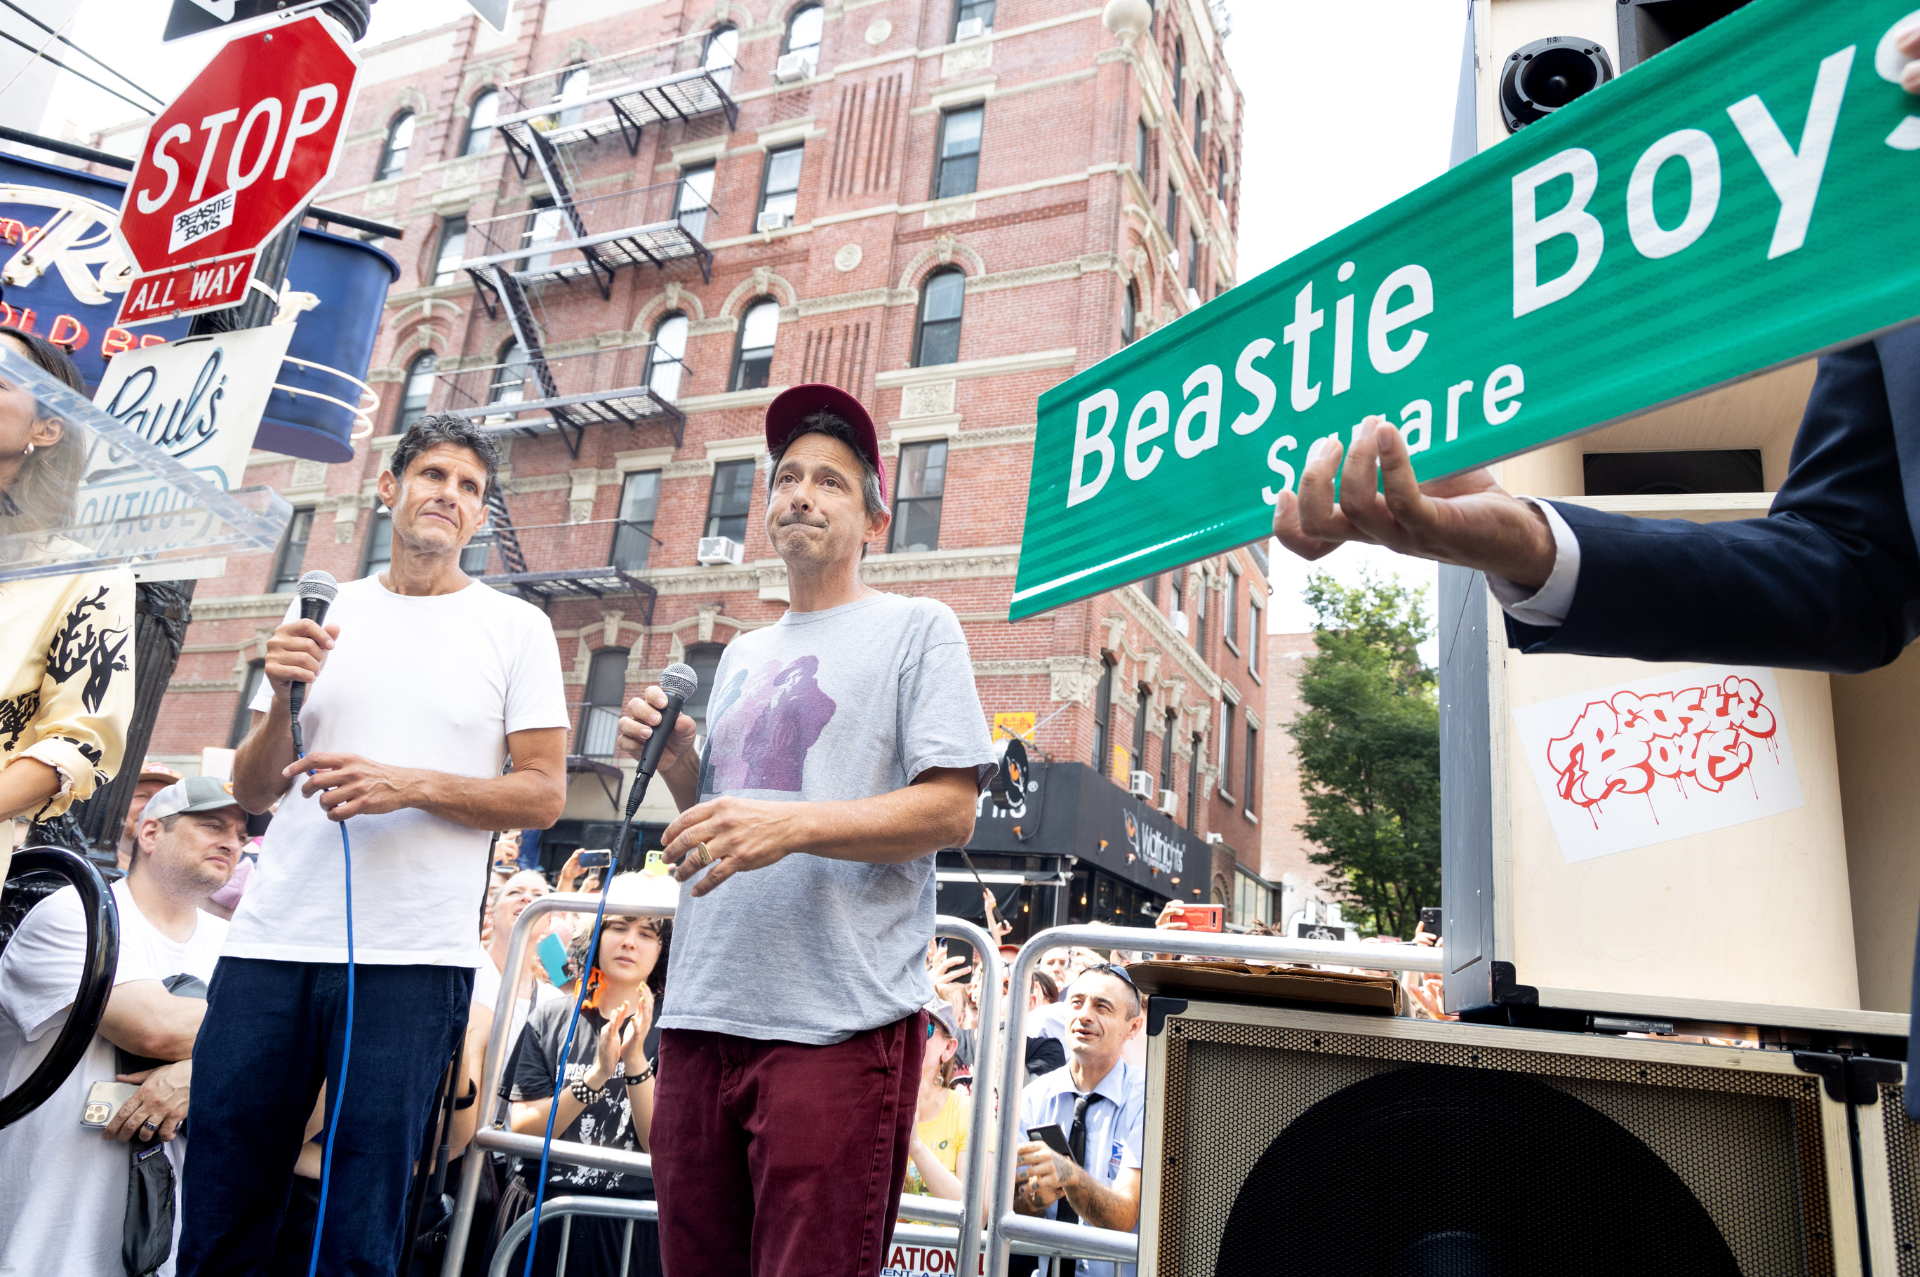 Los Beastie Boys tendrán calle con su nombre en NY